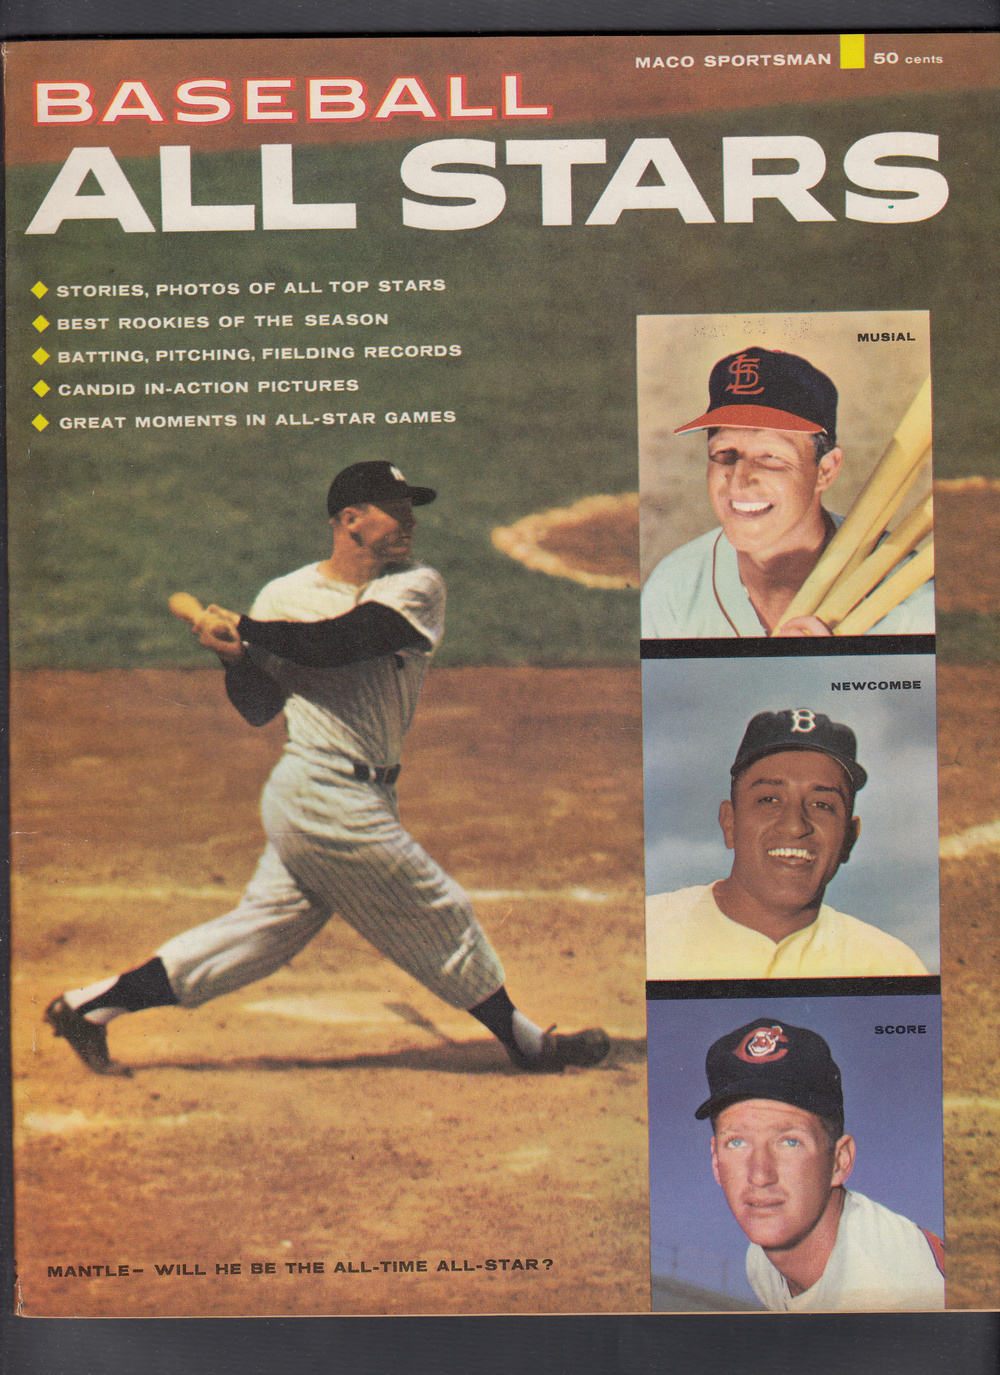 1957 BASEBALL ALL STARS FULL MAGAZINE M. MANTLE ON COVER photo